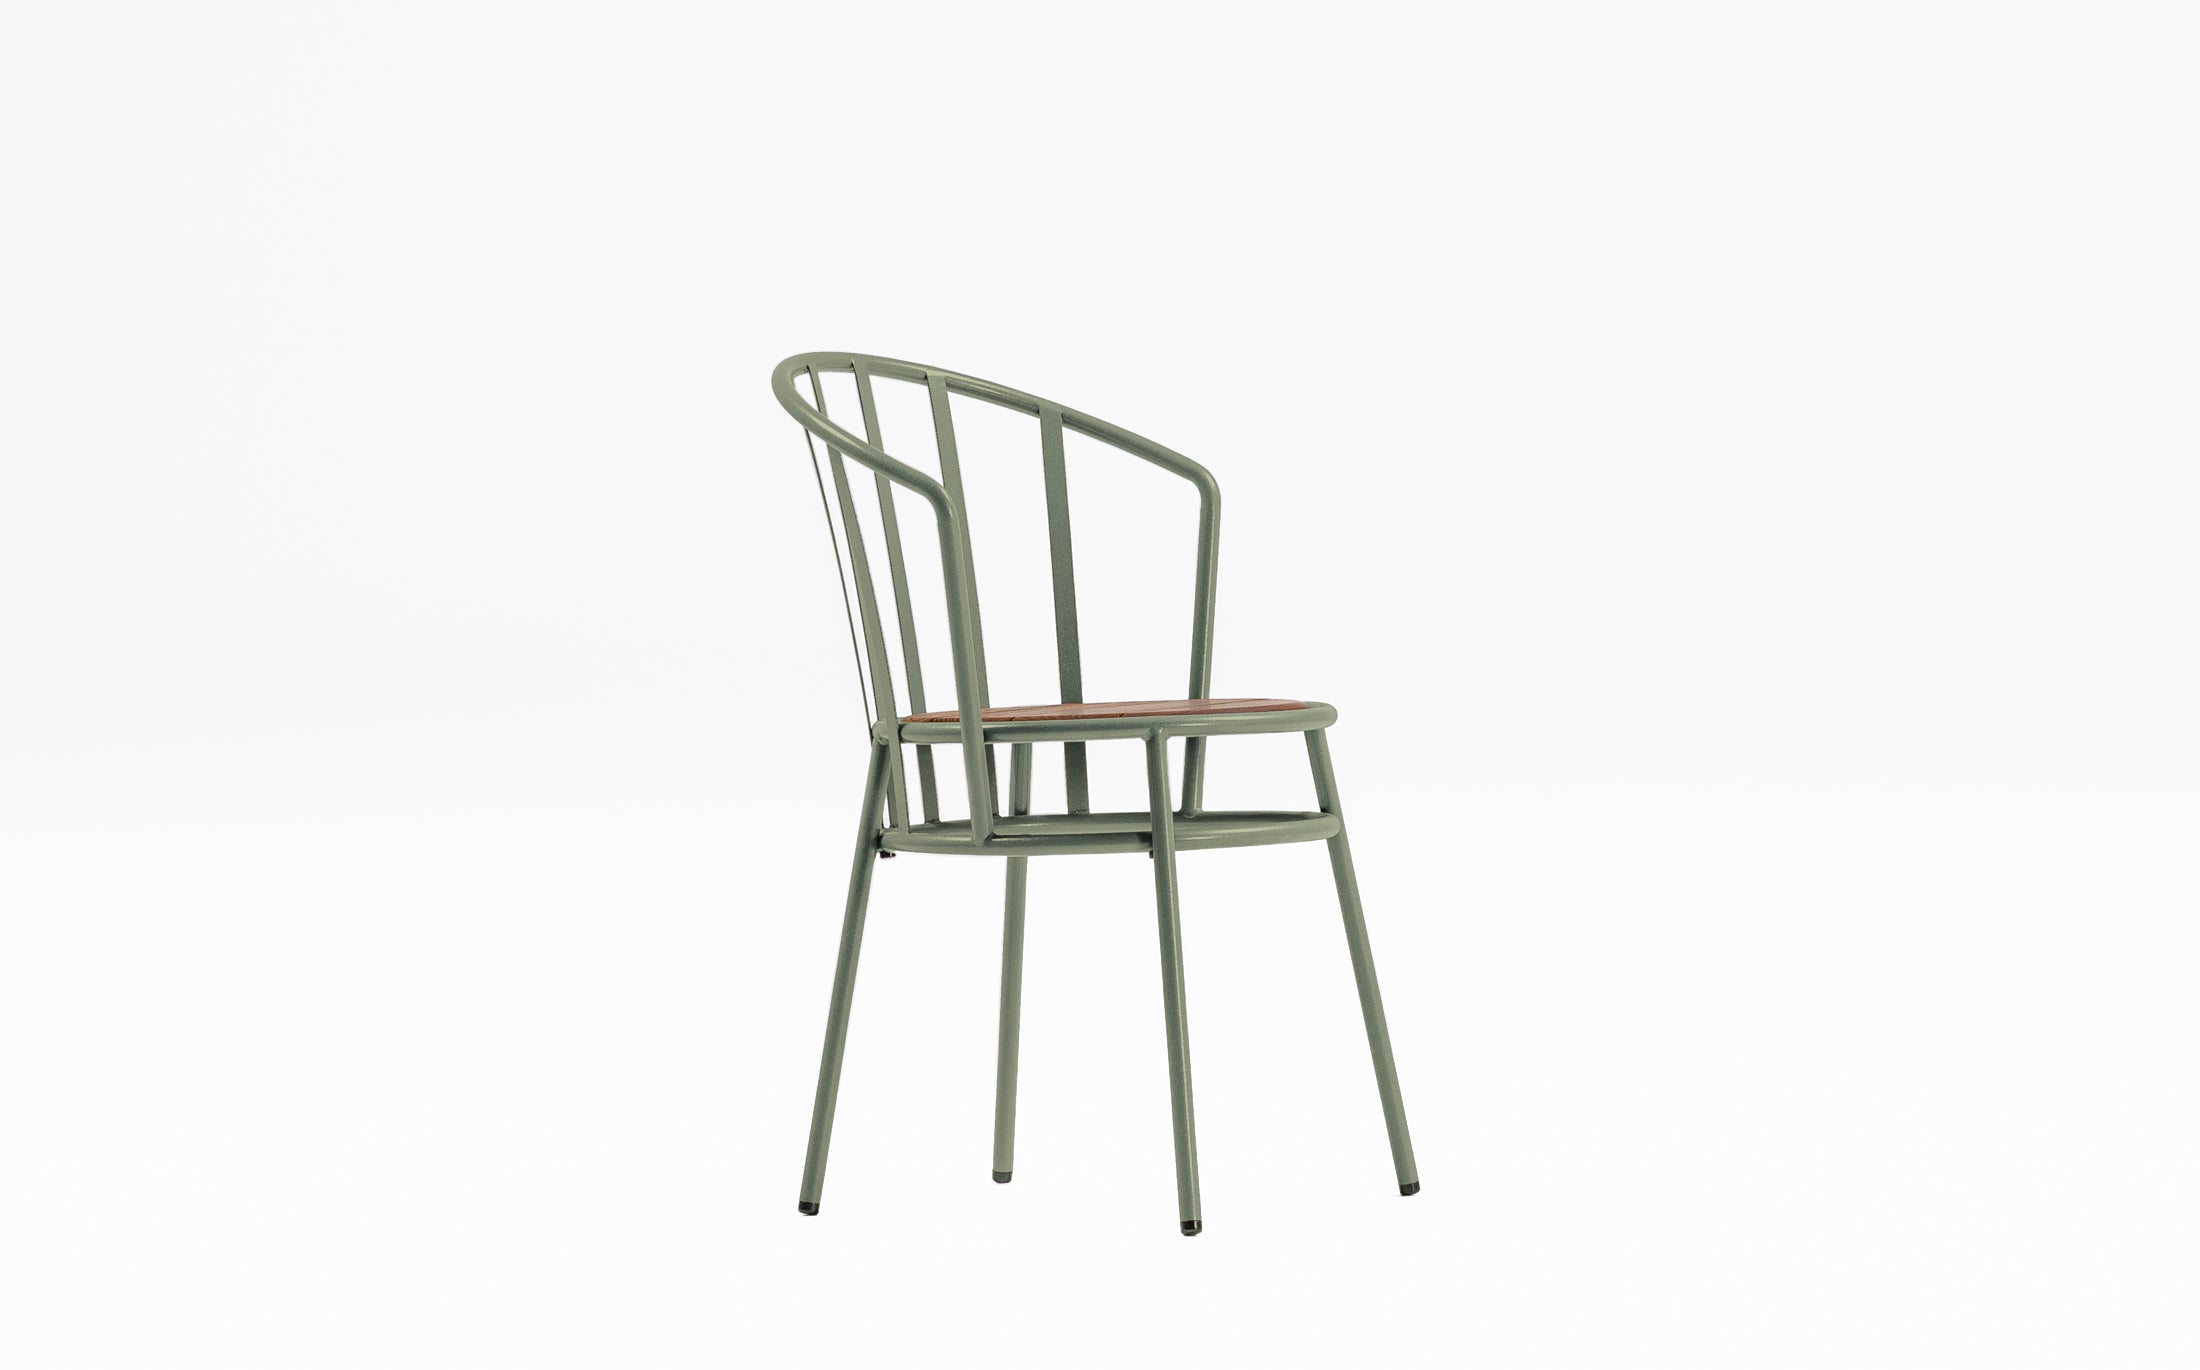 Offset Outdoor garden chair - Windsor - Green grey